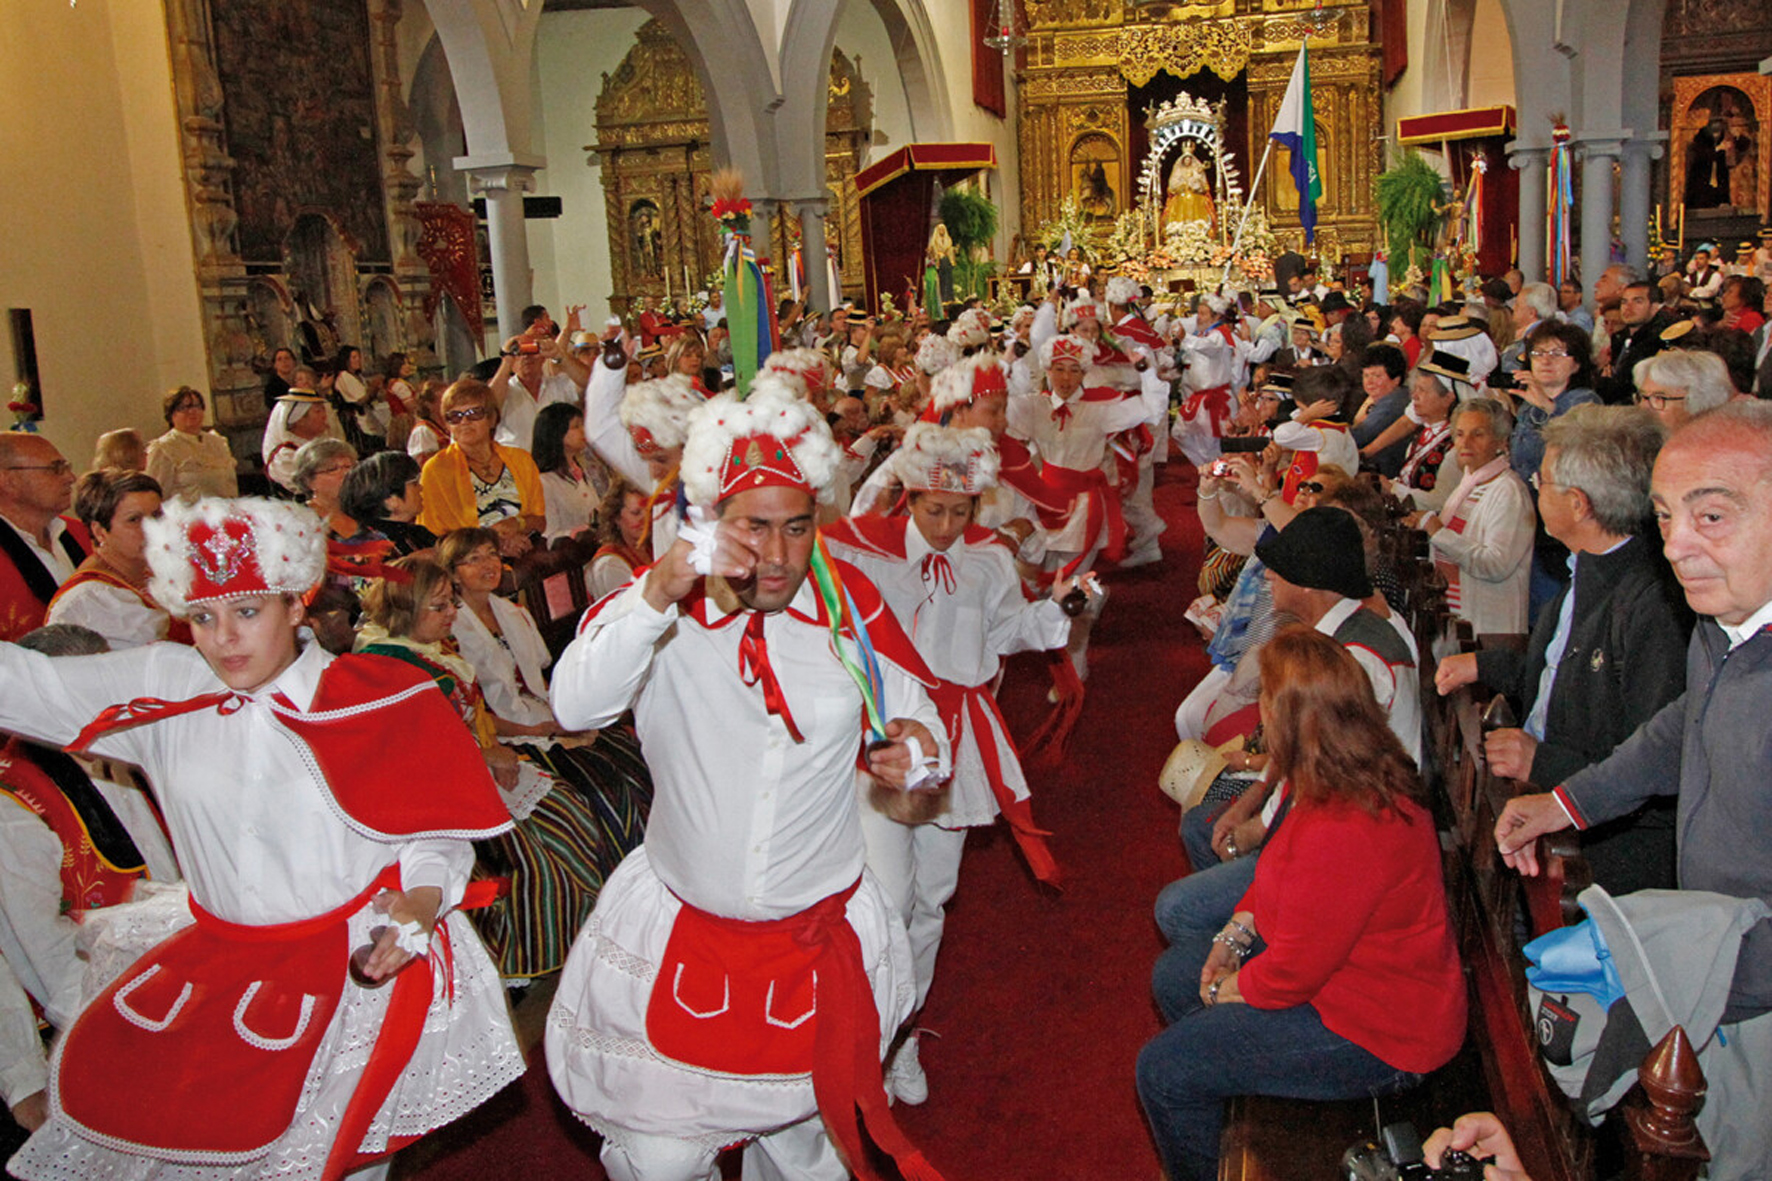 El Ayuntamiento de Los Realejos incoa expediente de distinción honorífica al pueblo de Sabinosa a través de su agrupación folclórica